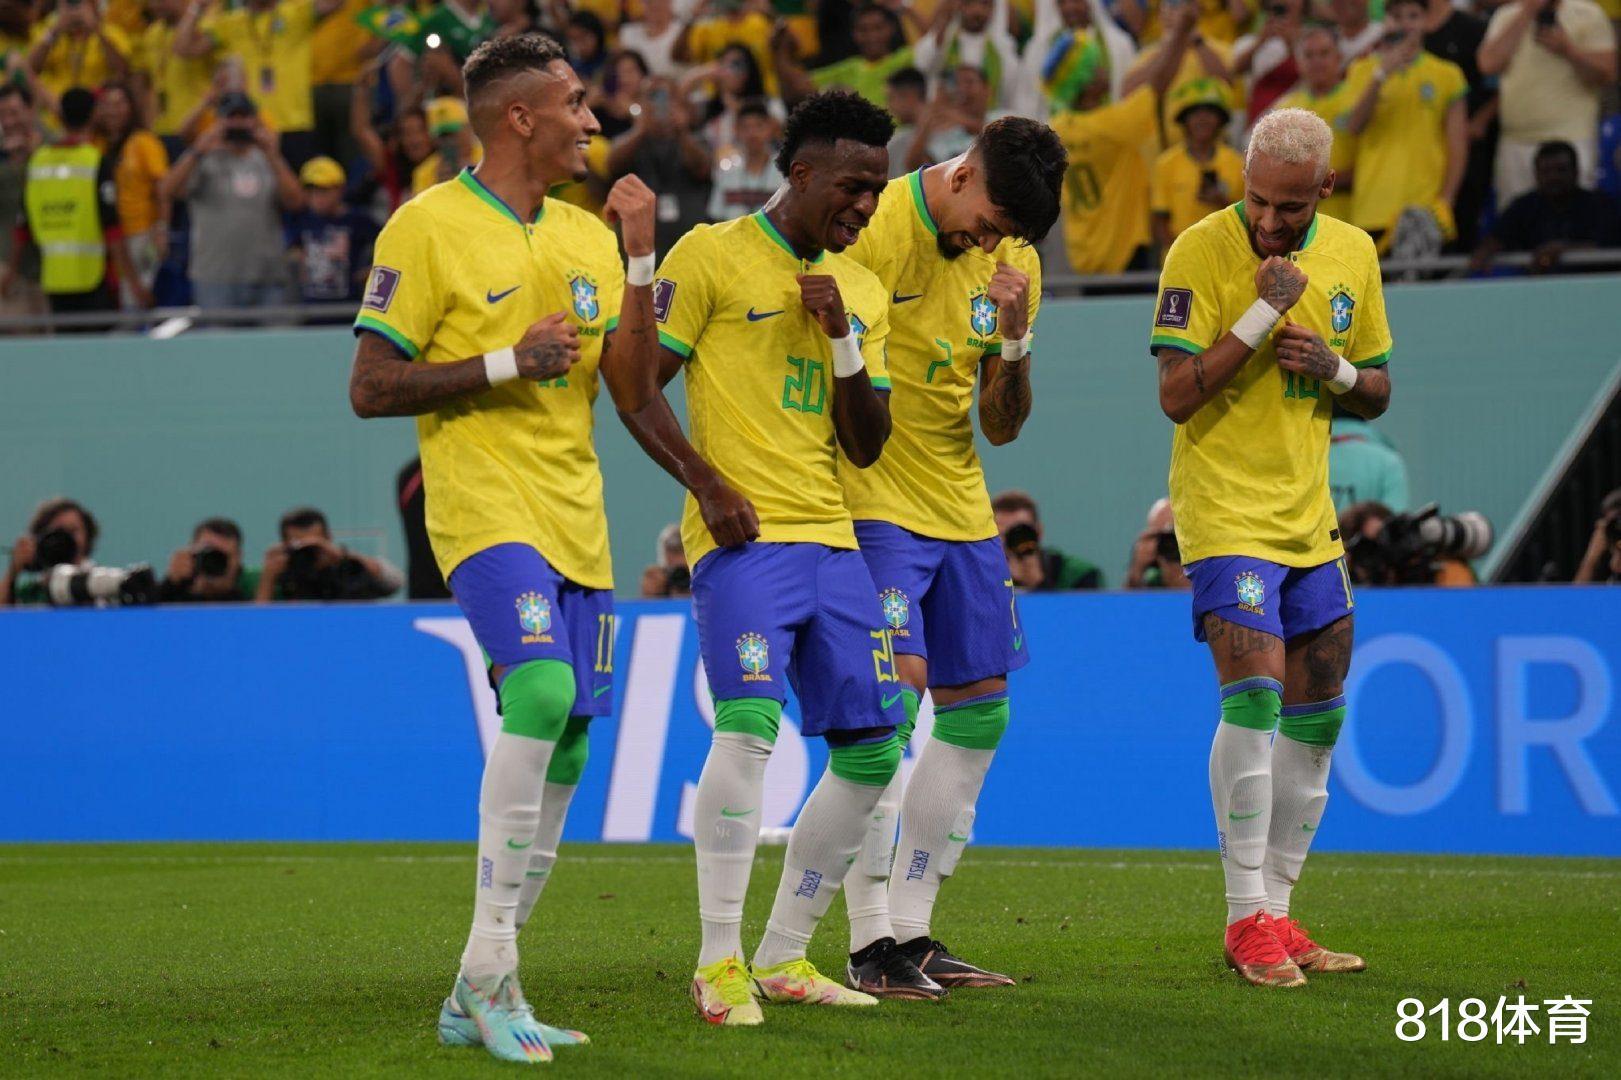 自取其辱! 韩国大叔赛前嘲讽巴西队: 记住米内罗惨败! 韩国7-1巴西(2)